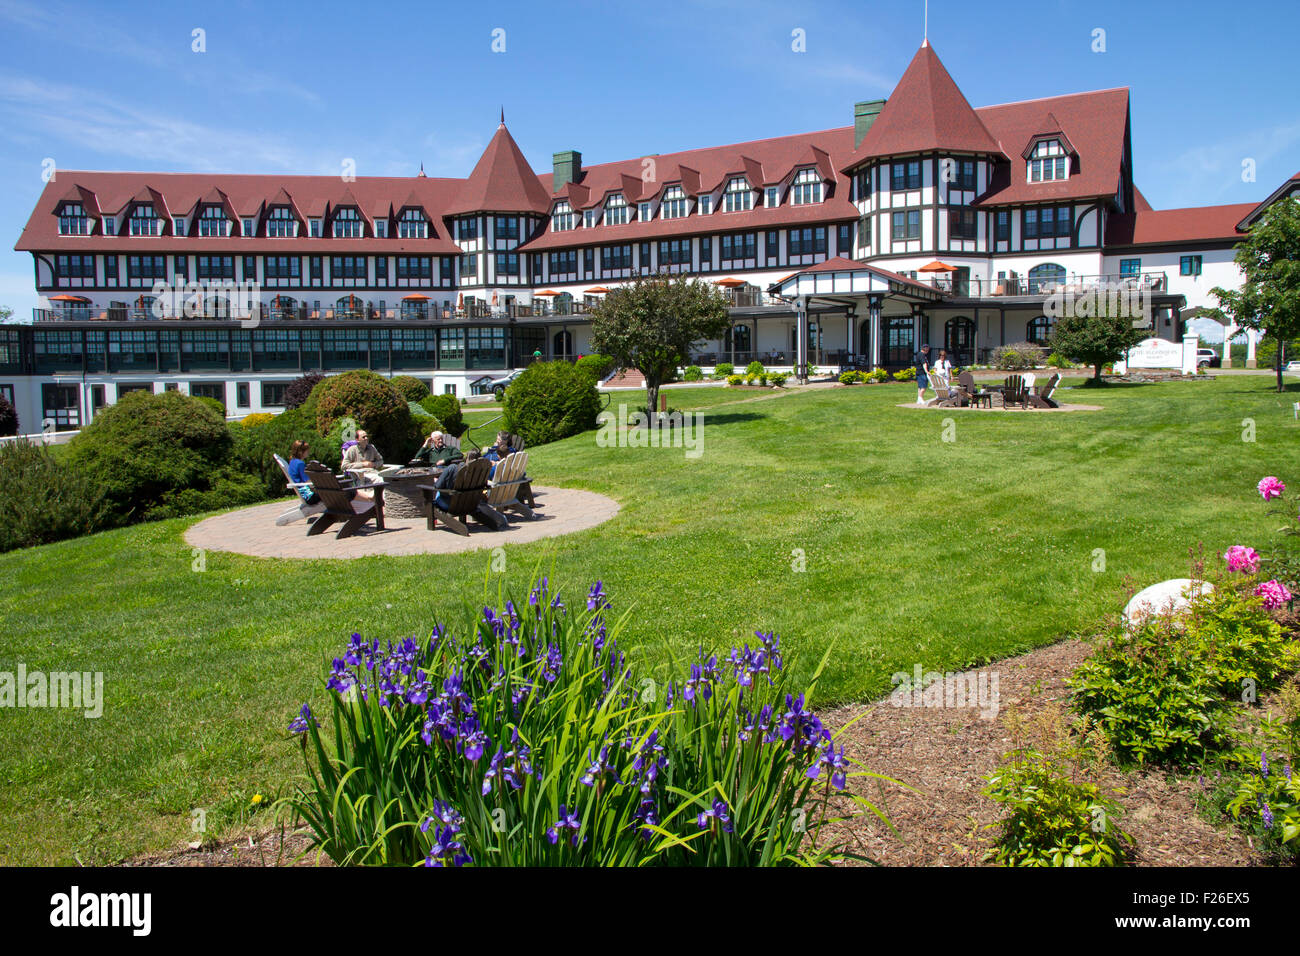 El Algonquin Hotel es un edificio histórico de 1889, de estilo Tudor Seaside Resort en Saint Andrews, New Brunswick, Canadá. Foto de stock